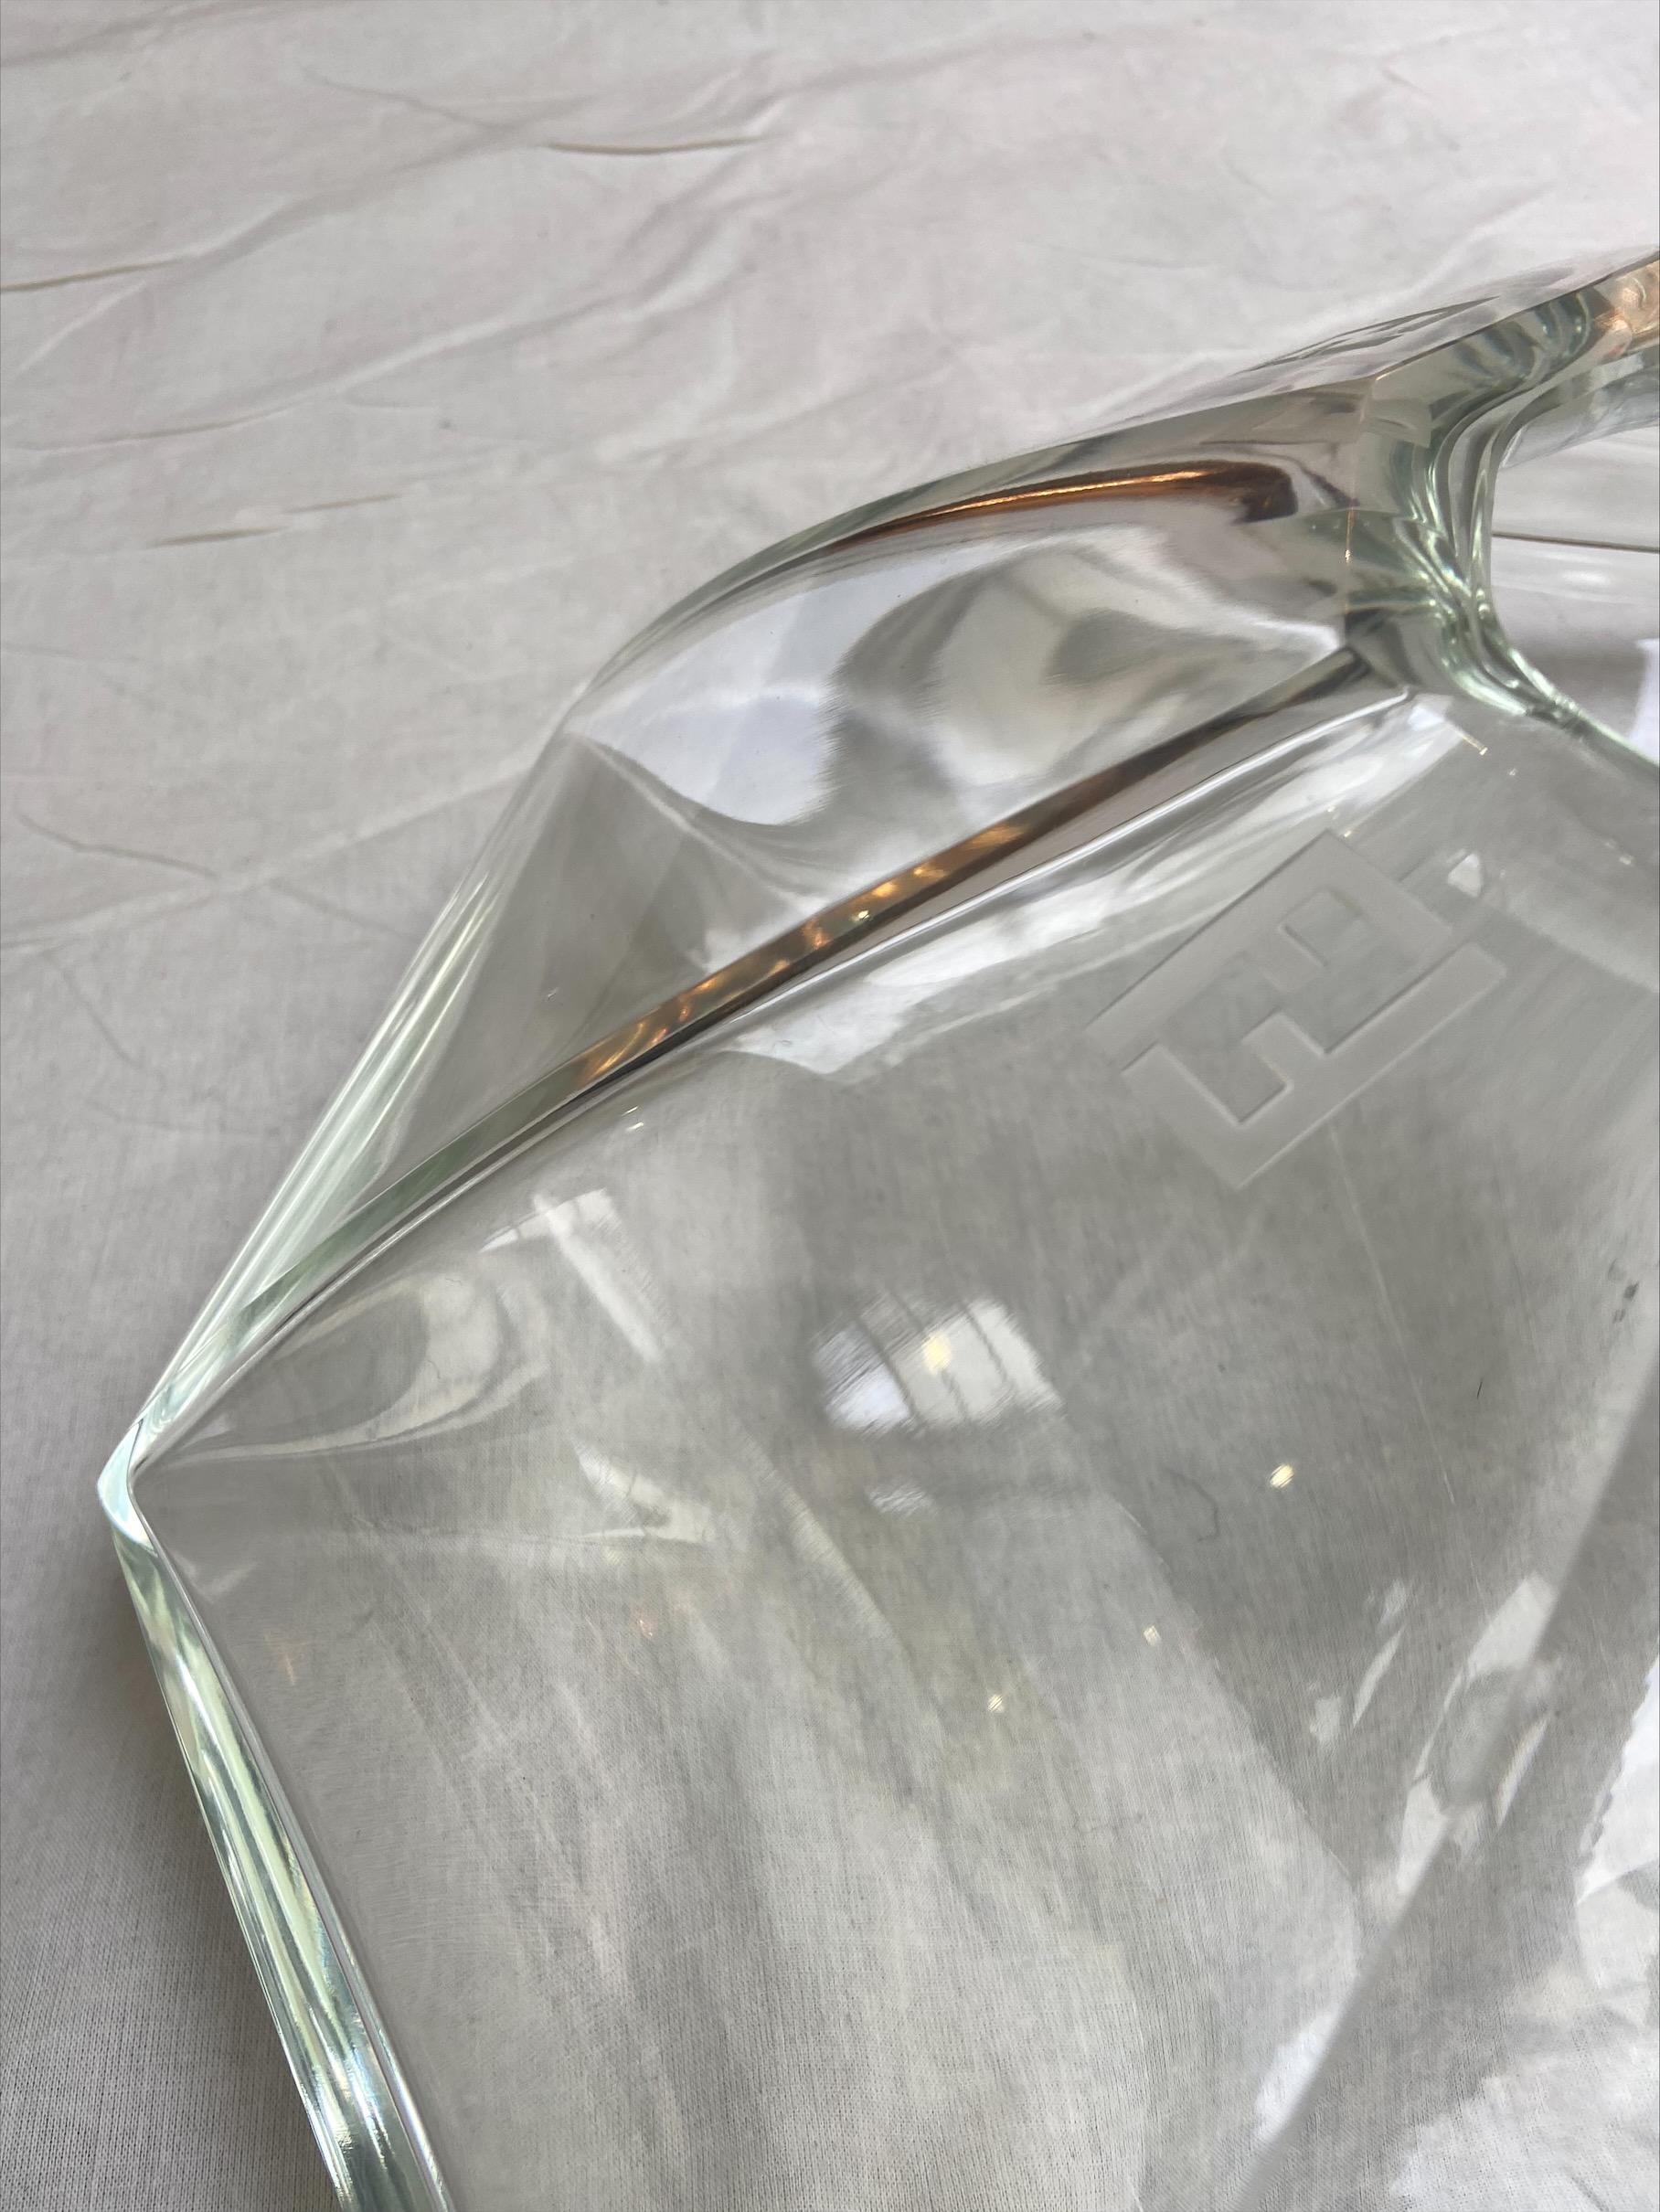 Fendi murano vase - Circa 2010
Murano glass
Measures: D40 x H14.

Perfect condition.